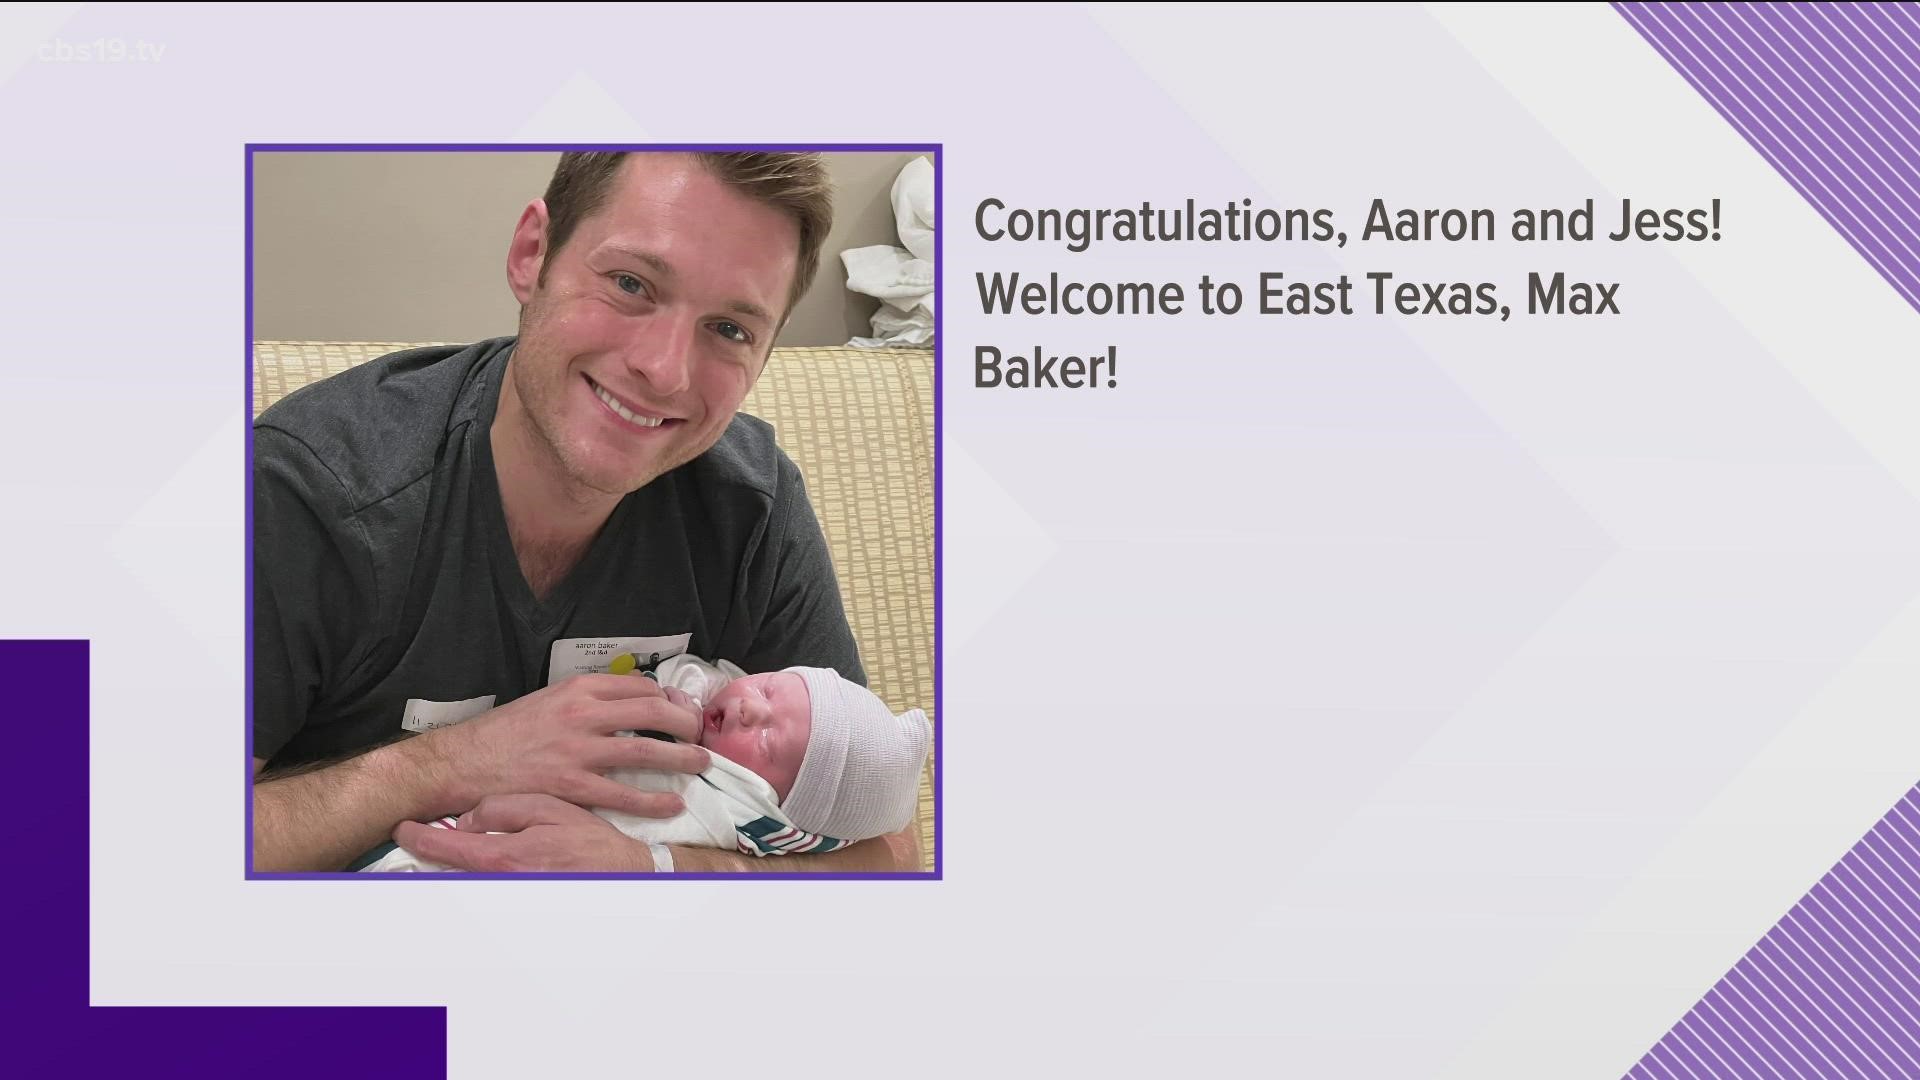 Meet Max Baker, Aaron Baker's baby boy!